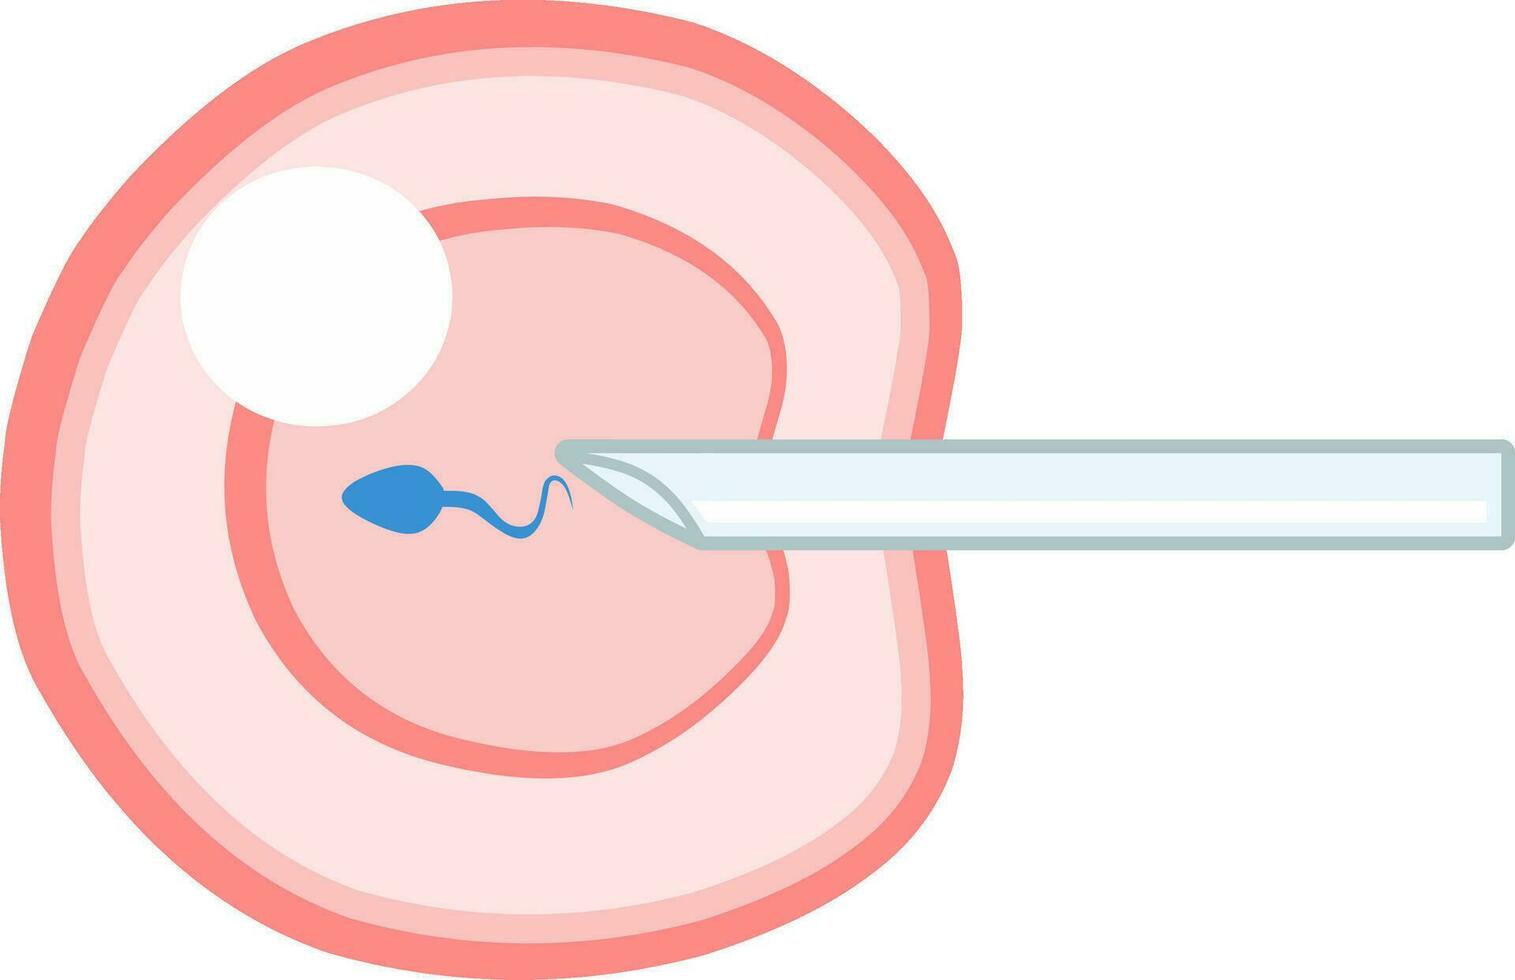 ivf icsi vetor ilustração. perfeito para apresentando qualquer coisa sobre reprodução, inseminação ou FIV.